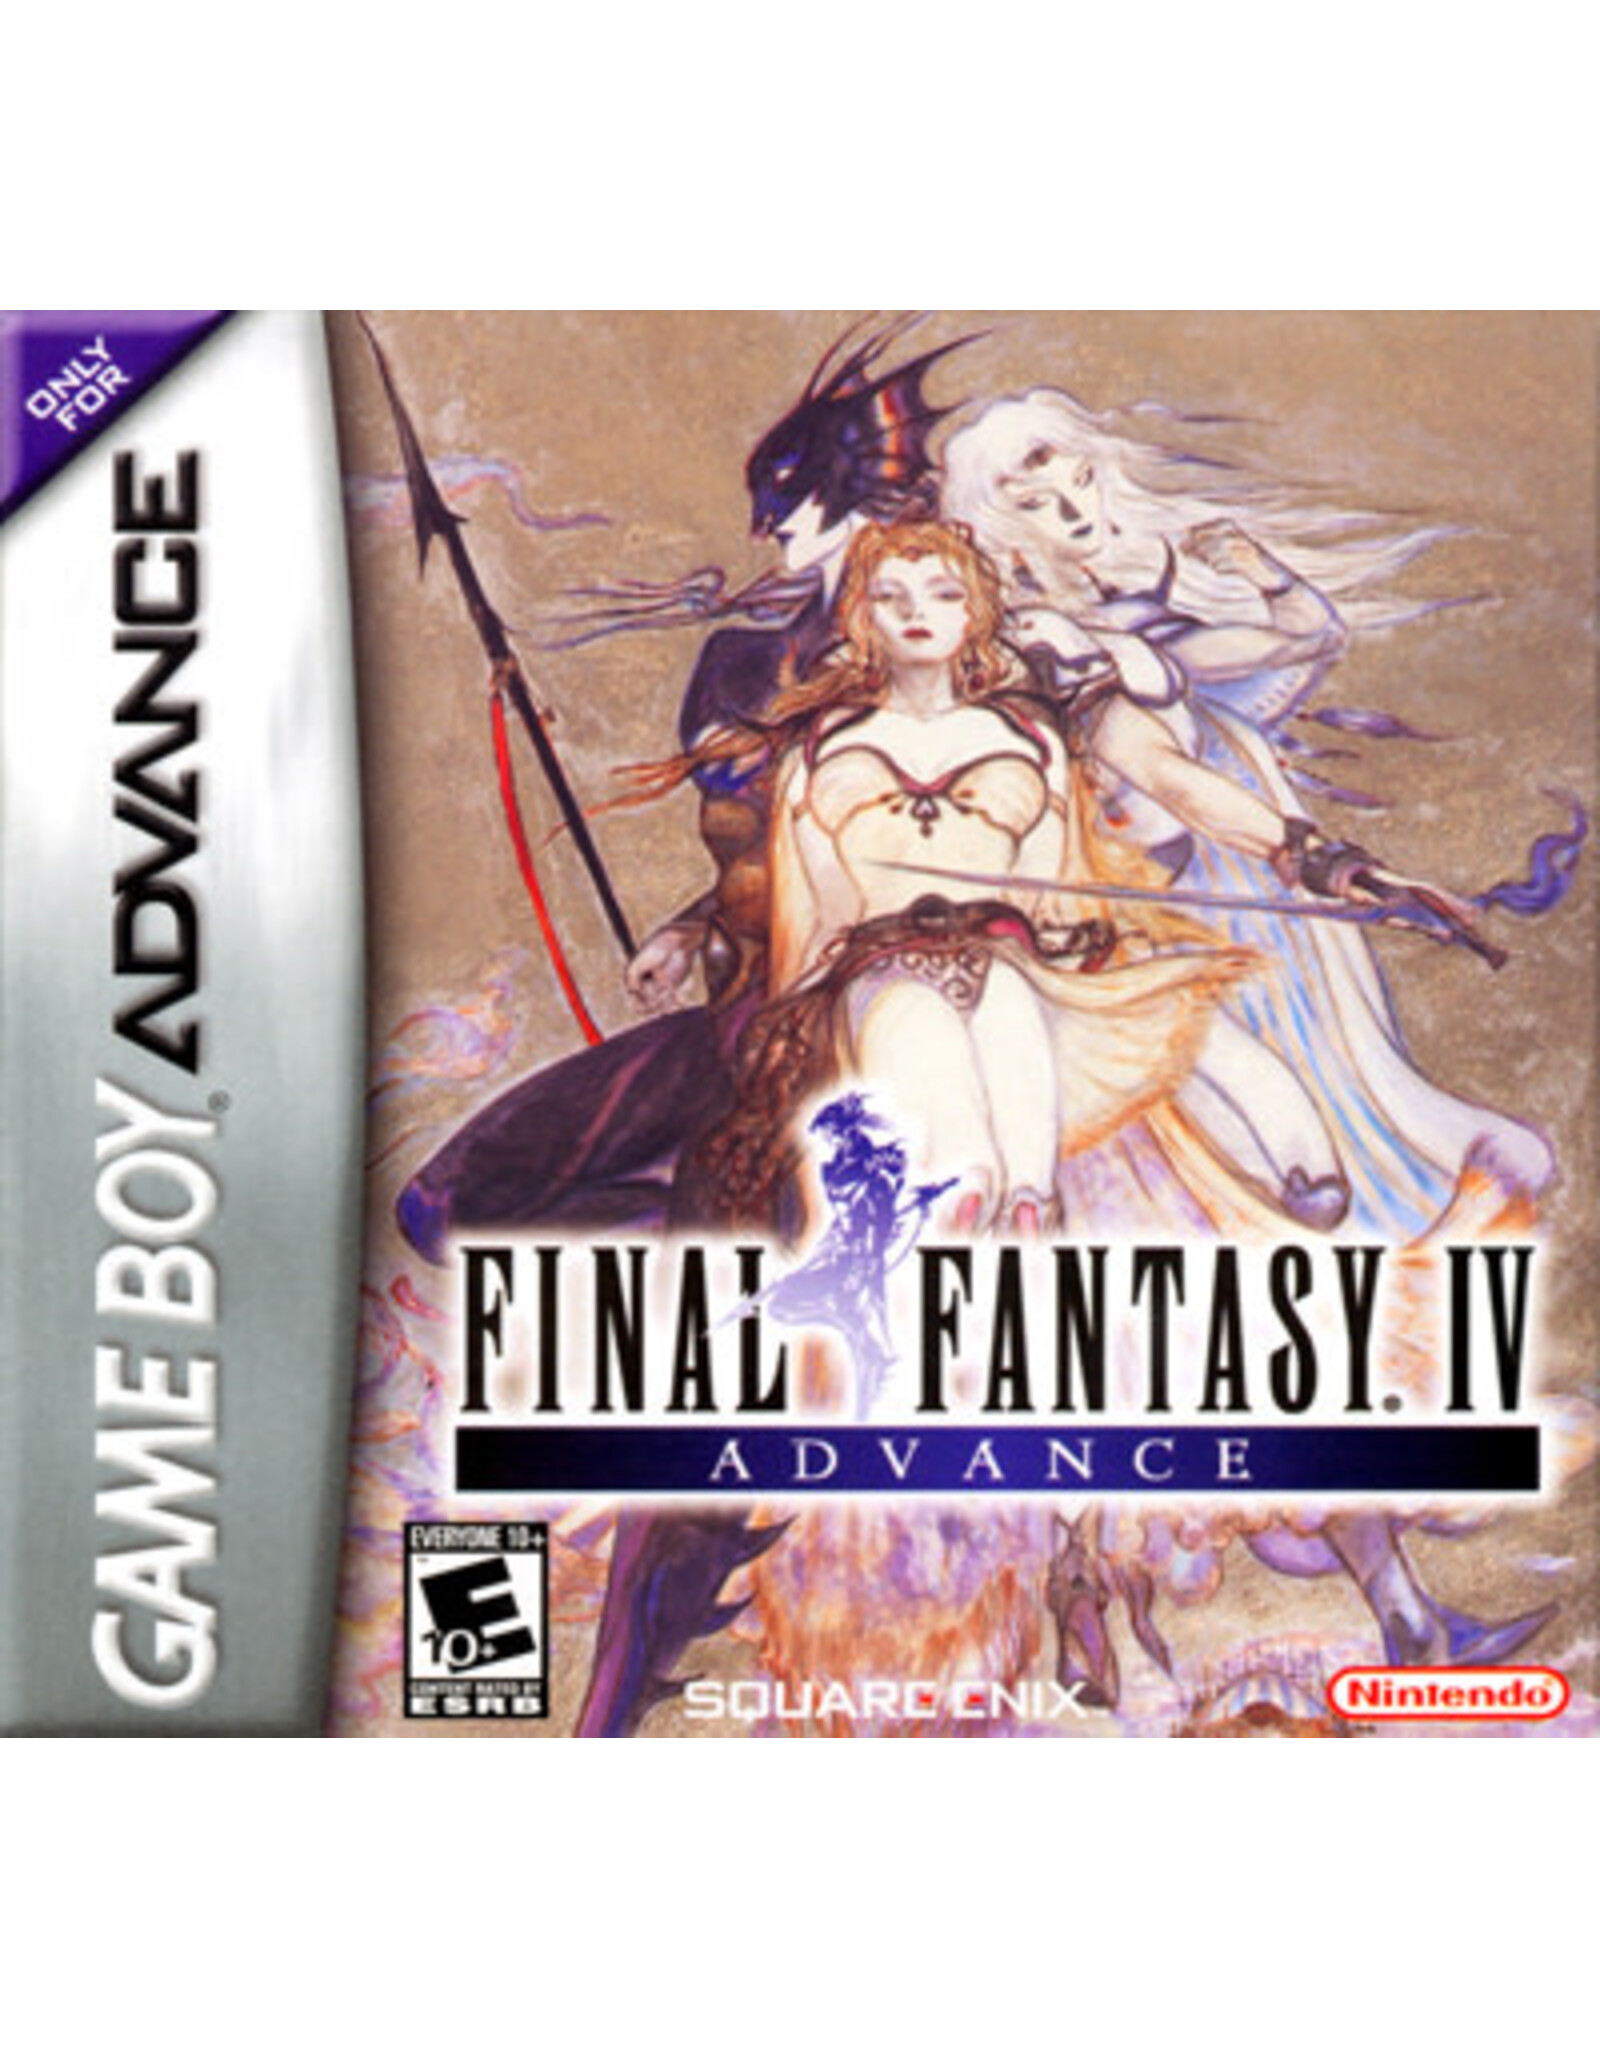 Game Boy Advance Final Fantasy IV Advance (Boxed, No Manual)